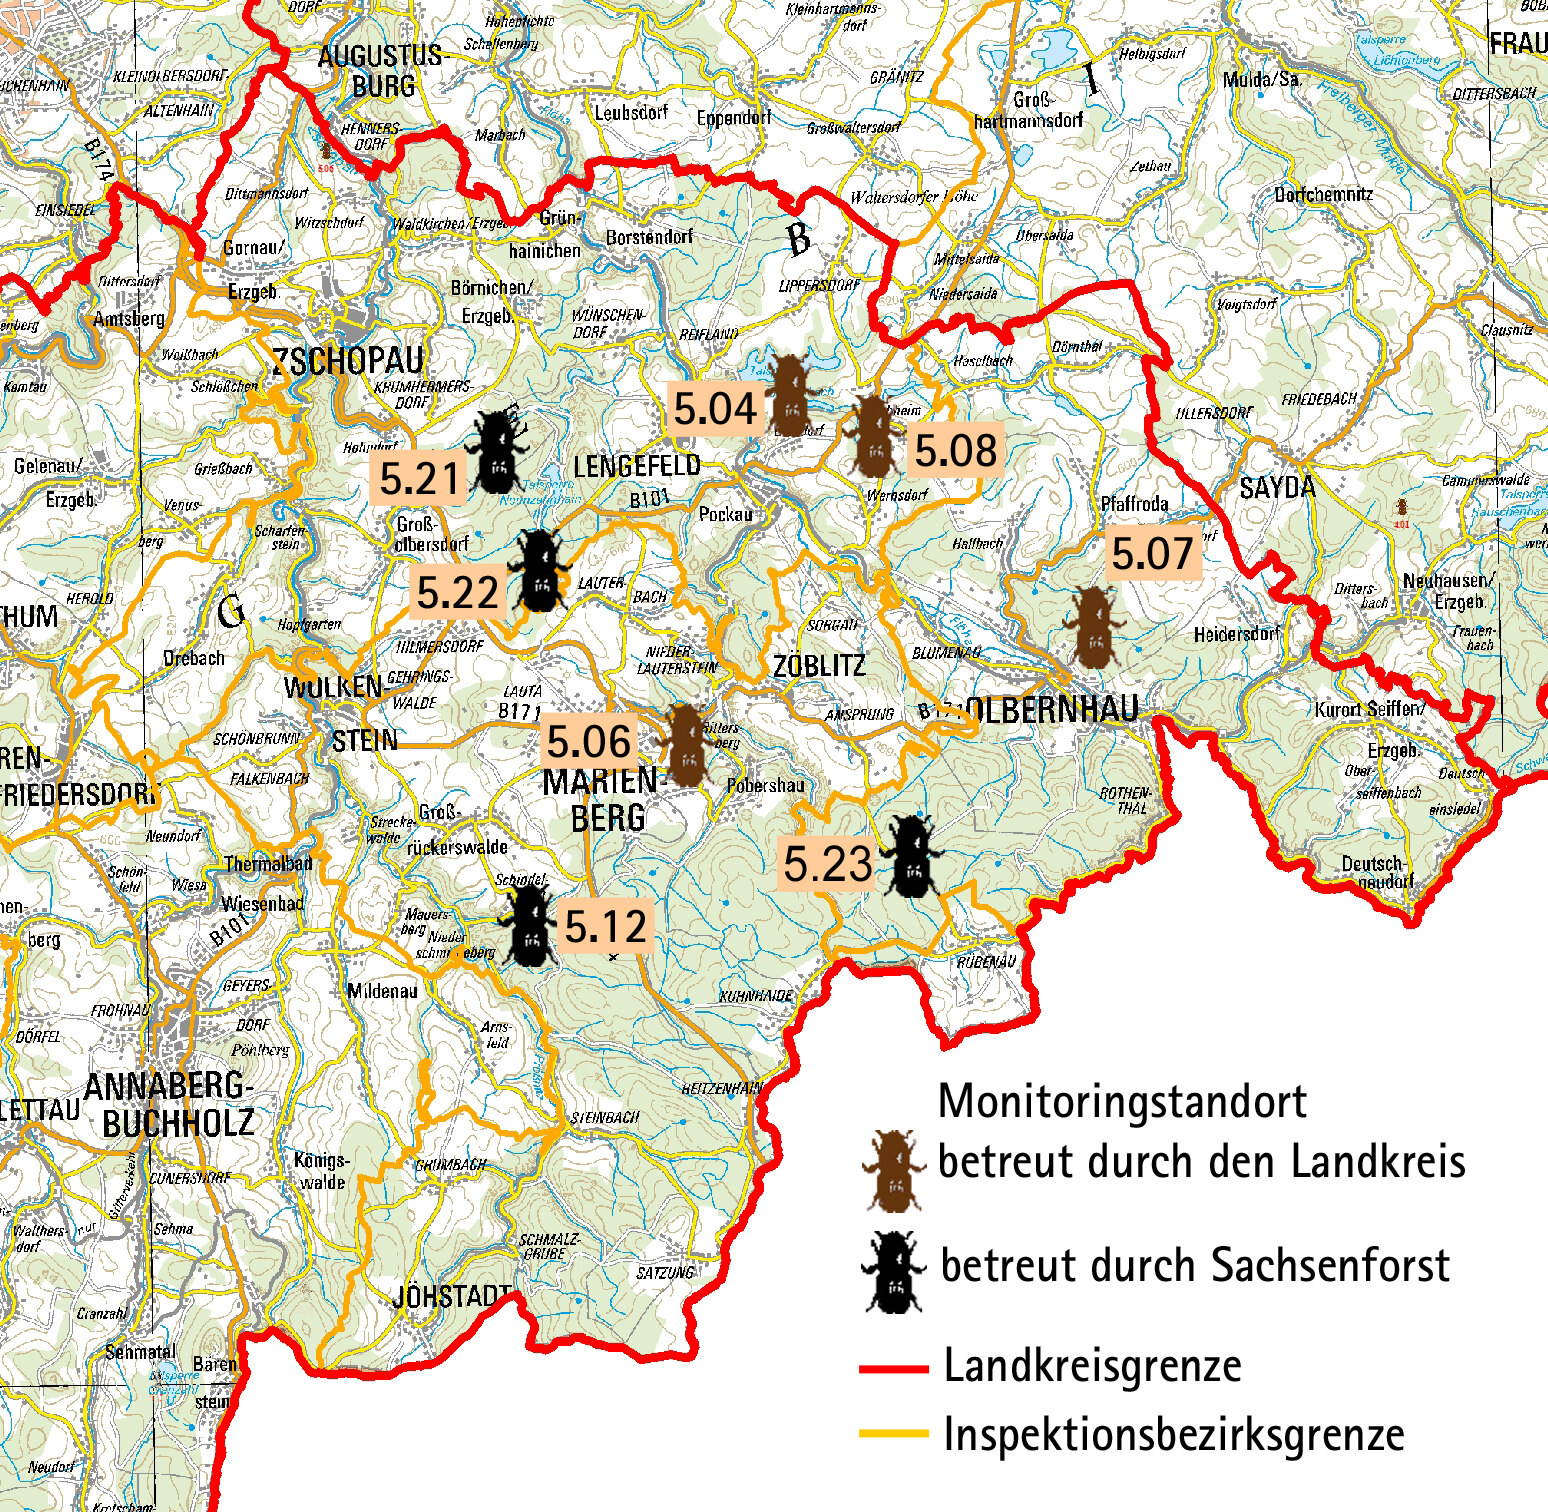 Übersichtskarte mit den Fallenstandorten im Landkreis Erzgebirgskreis, östlicher Teil